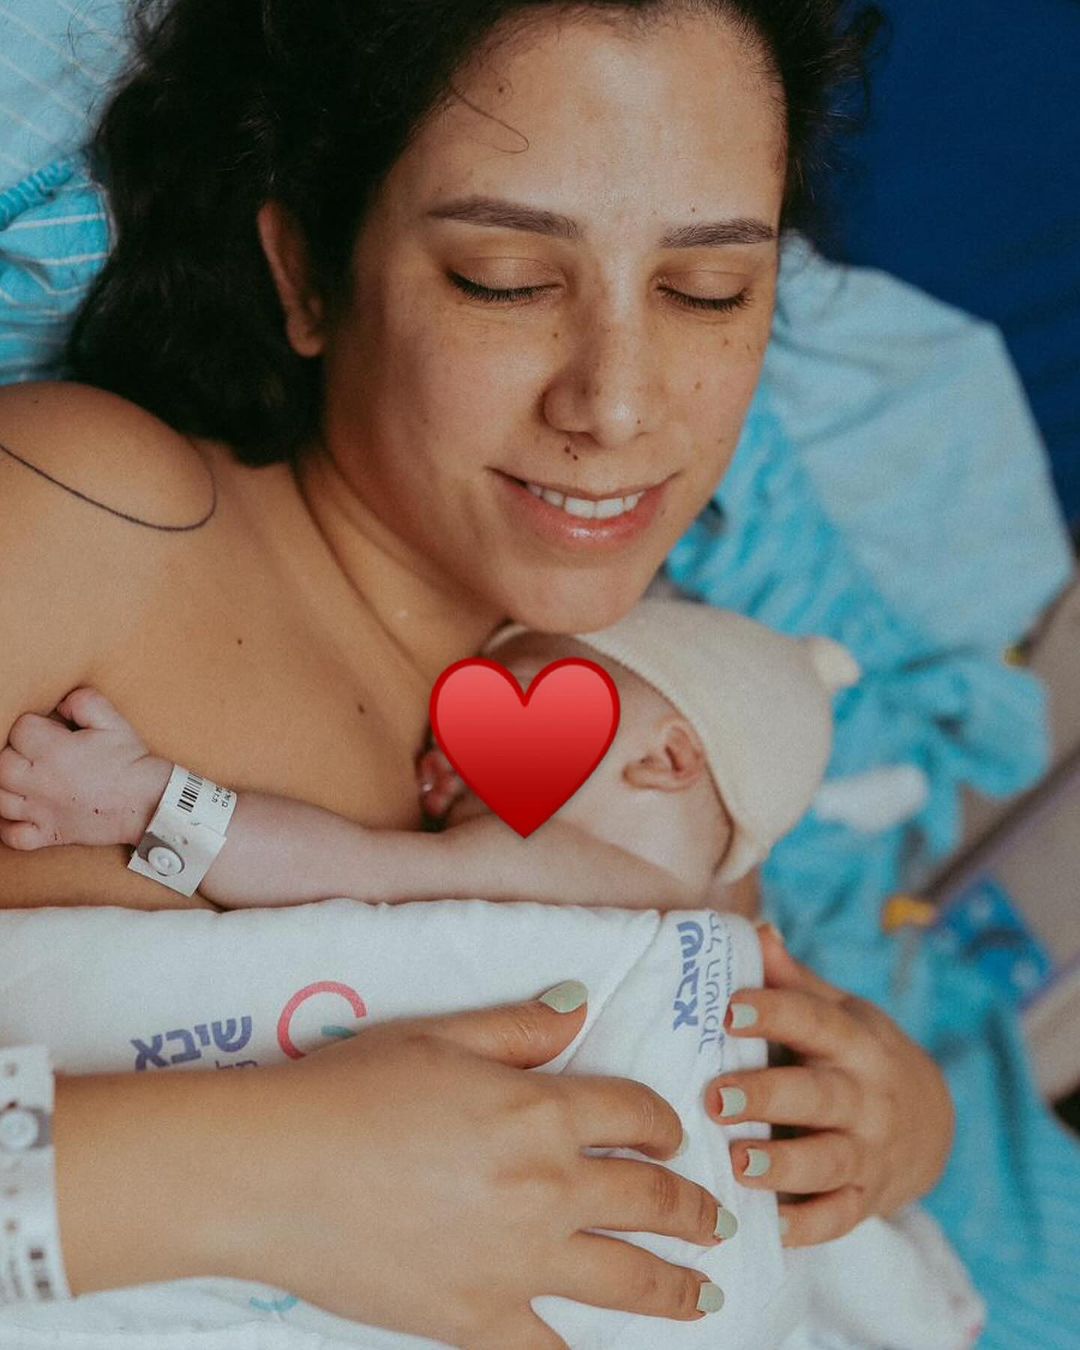 מאי שכטר ומשה יחזקאל לאחר הולדת בנם הבכור | צילום: שני מתוק shanimatok@